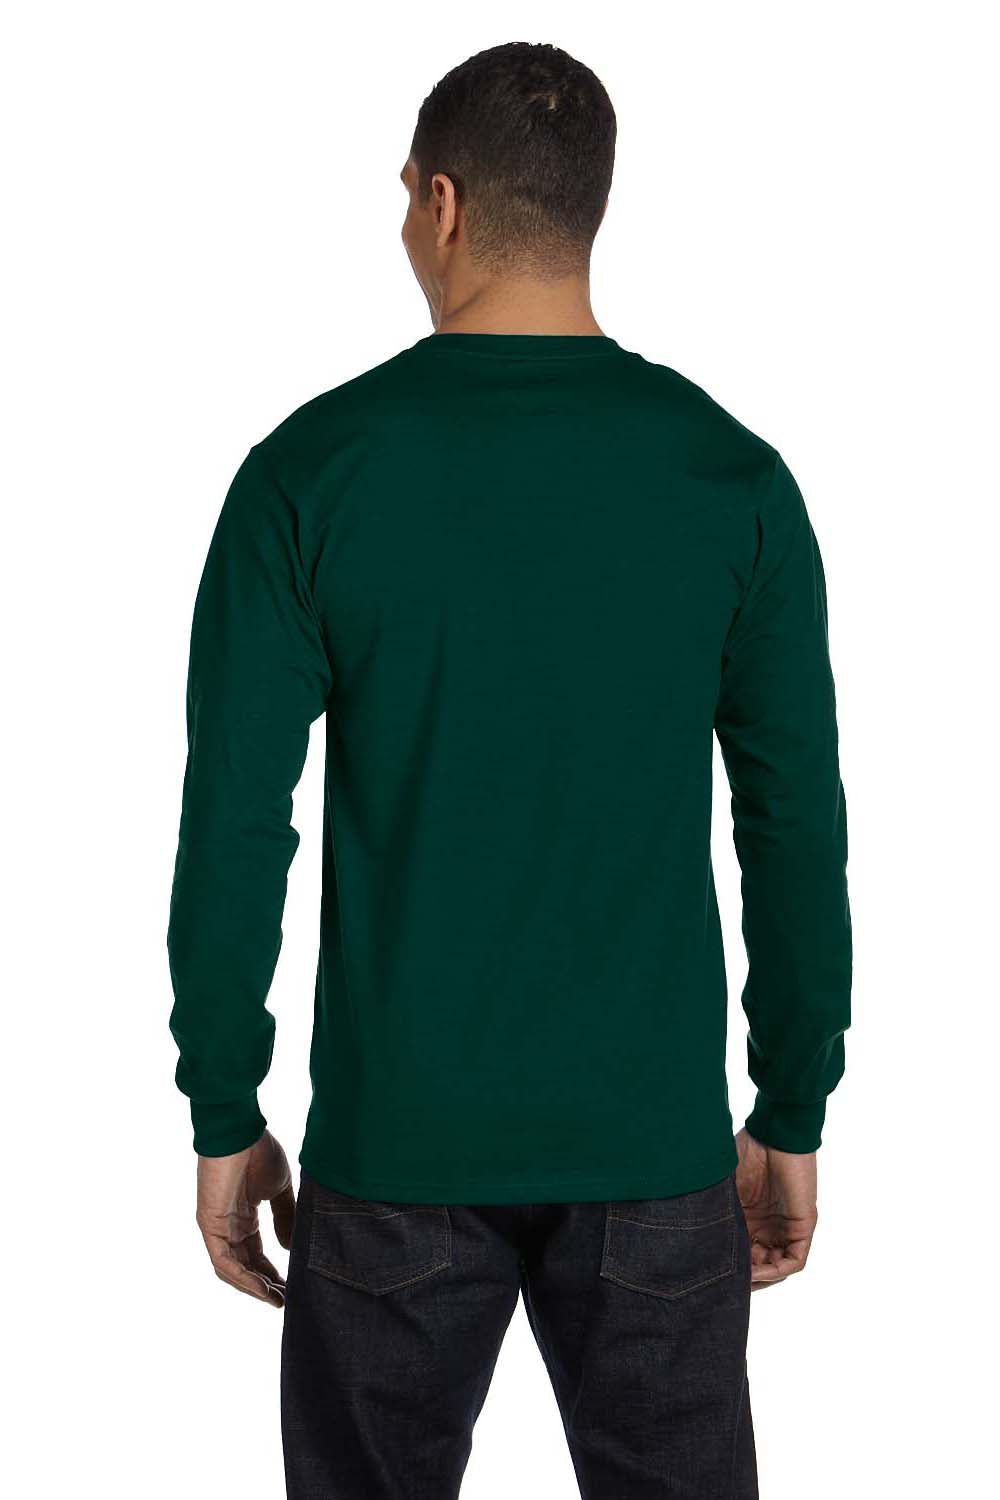 Gildan G840 Mens DryBlend Moisture Wicking Long Sleeve Crewneck T-Shirt Forest Green Back